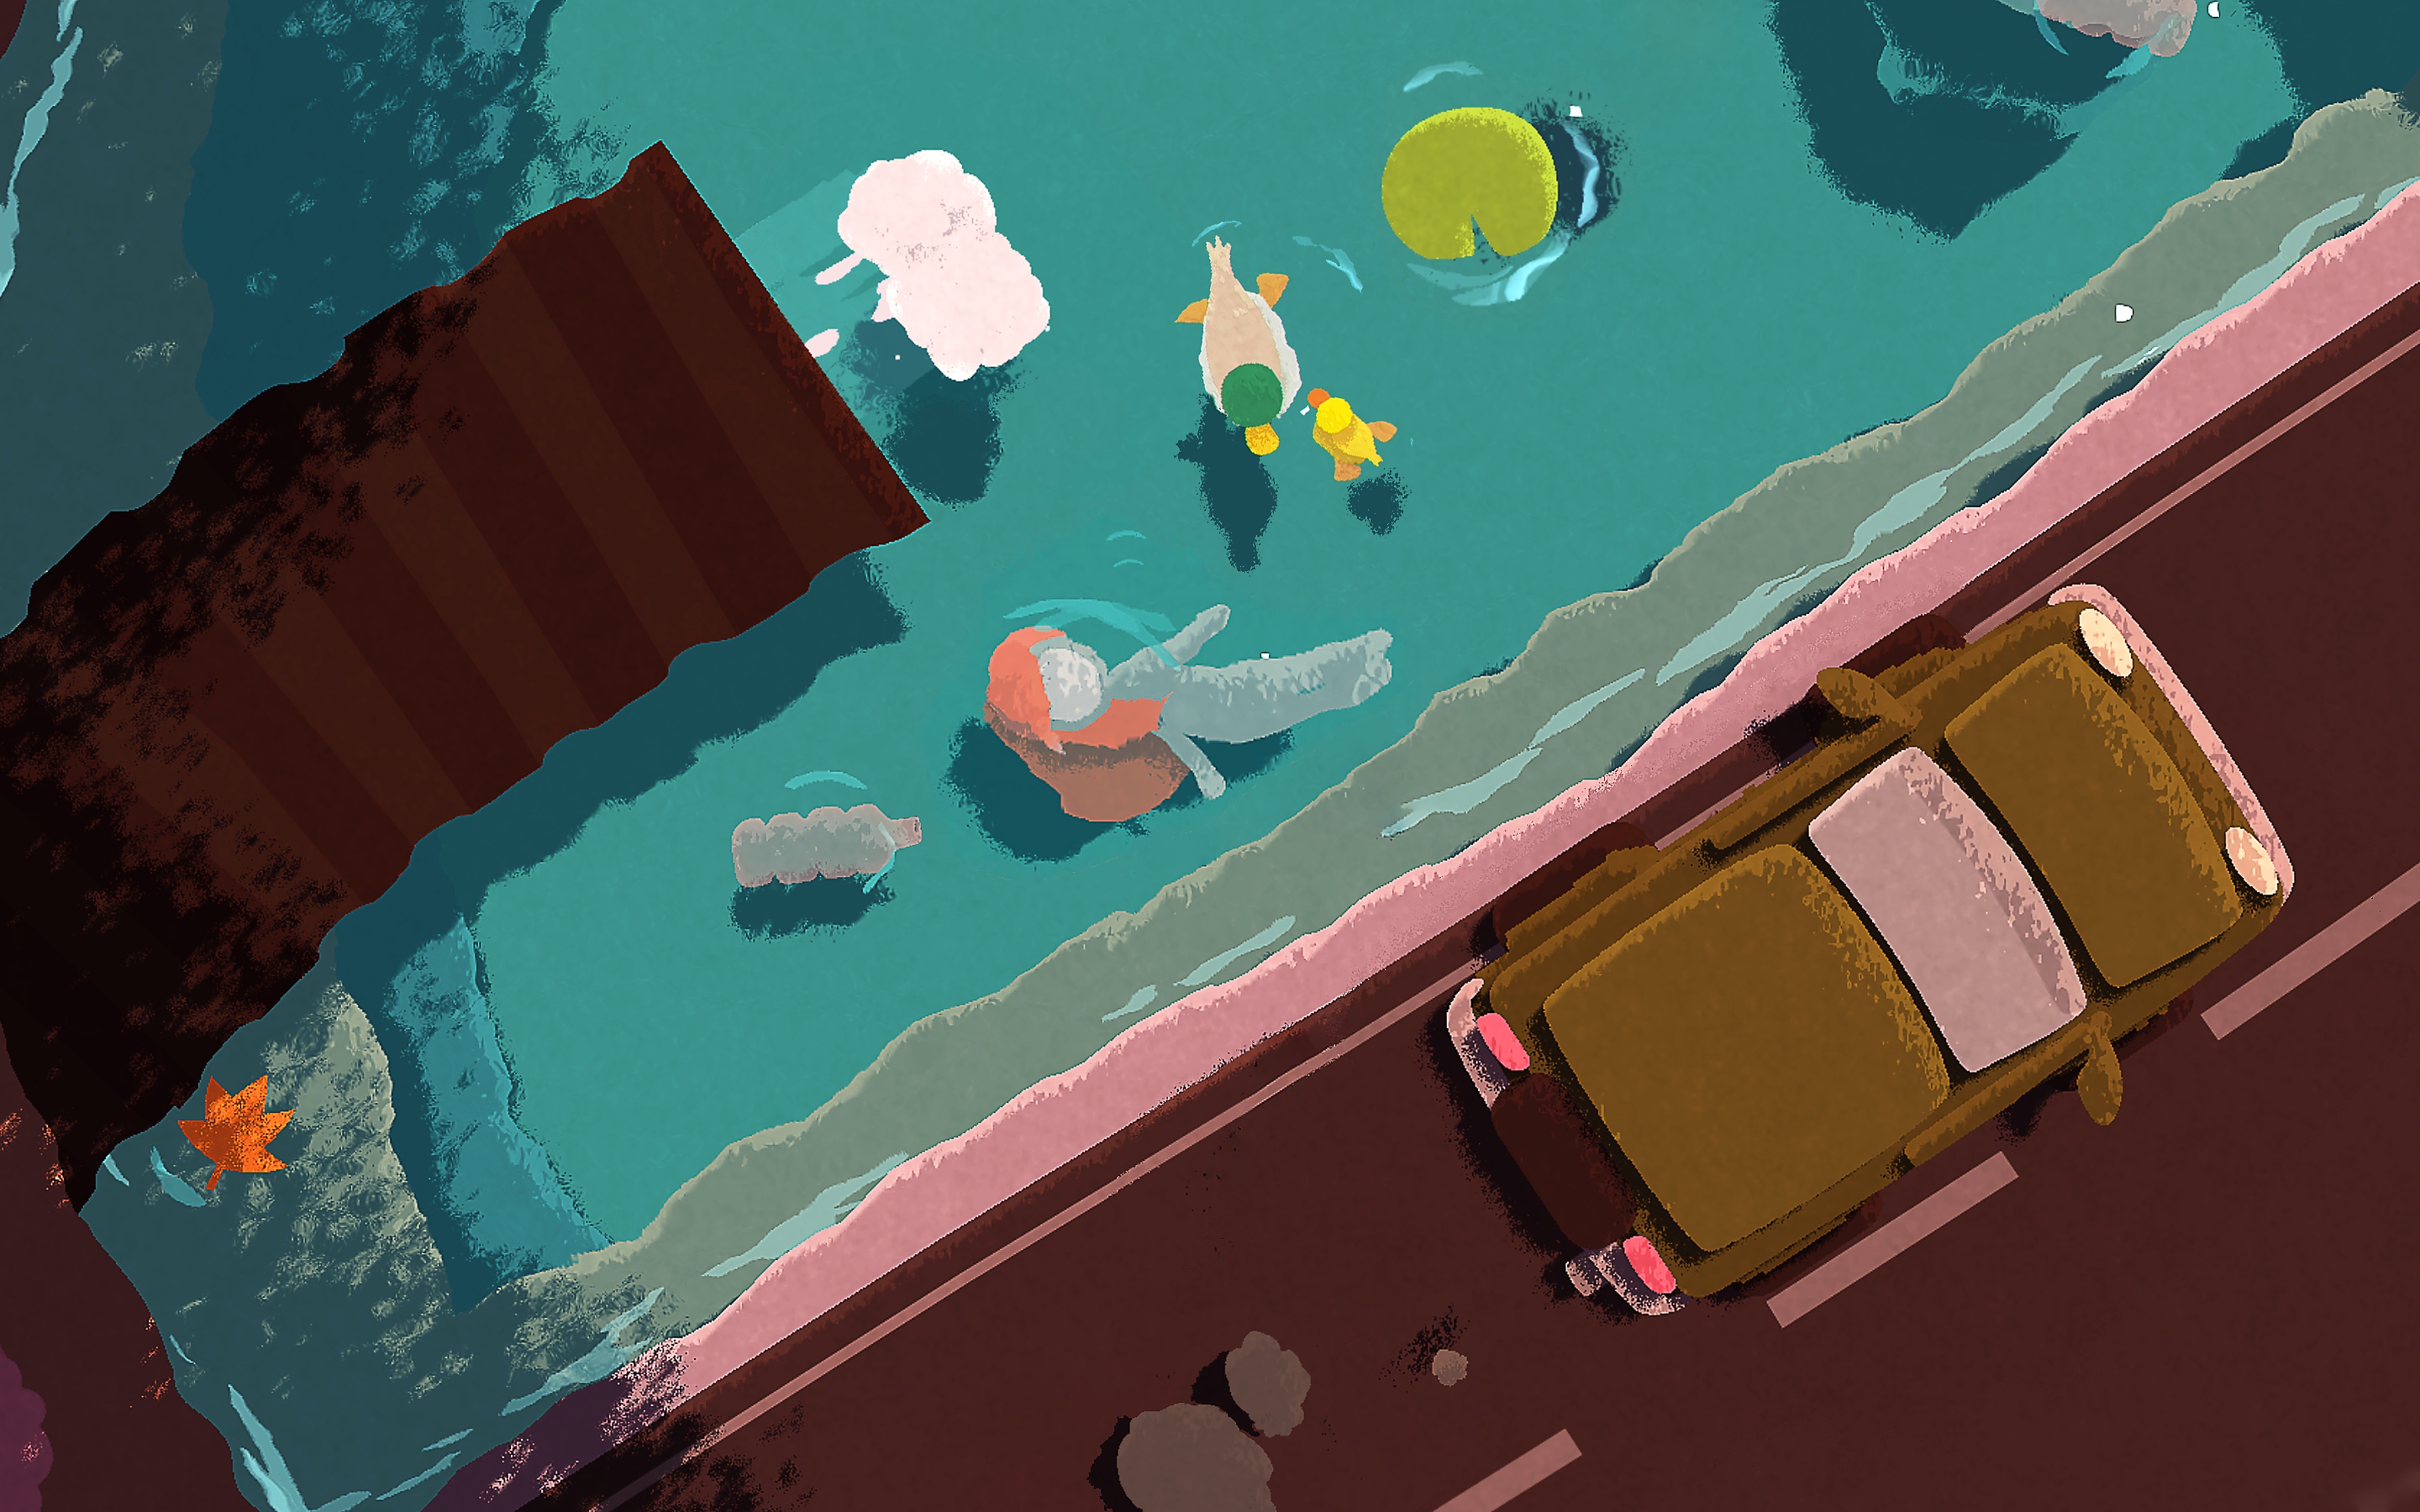 Captura de pantalla de Naiad que muestra a un personaje flotando por un río debajo de un puente con carros cruzando